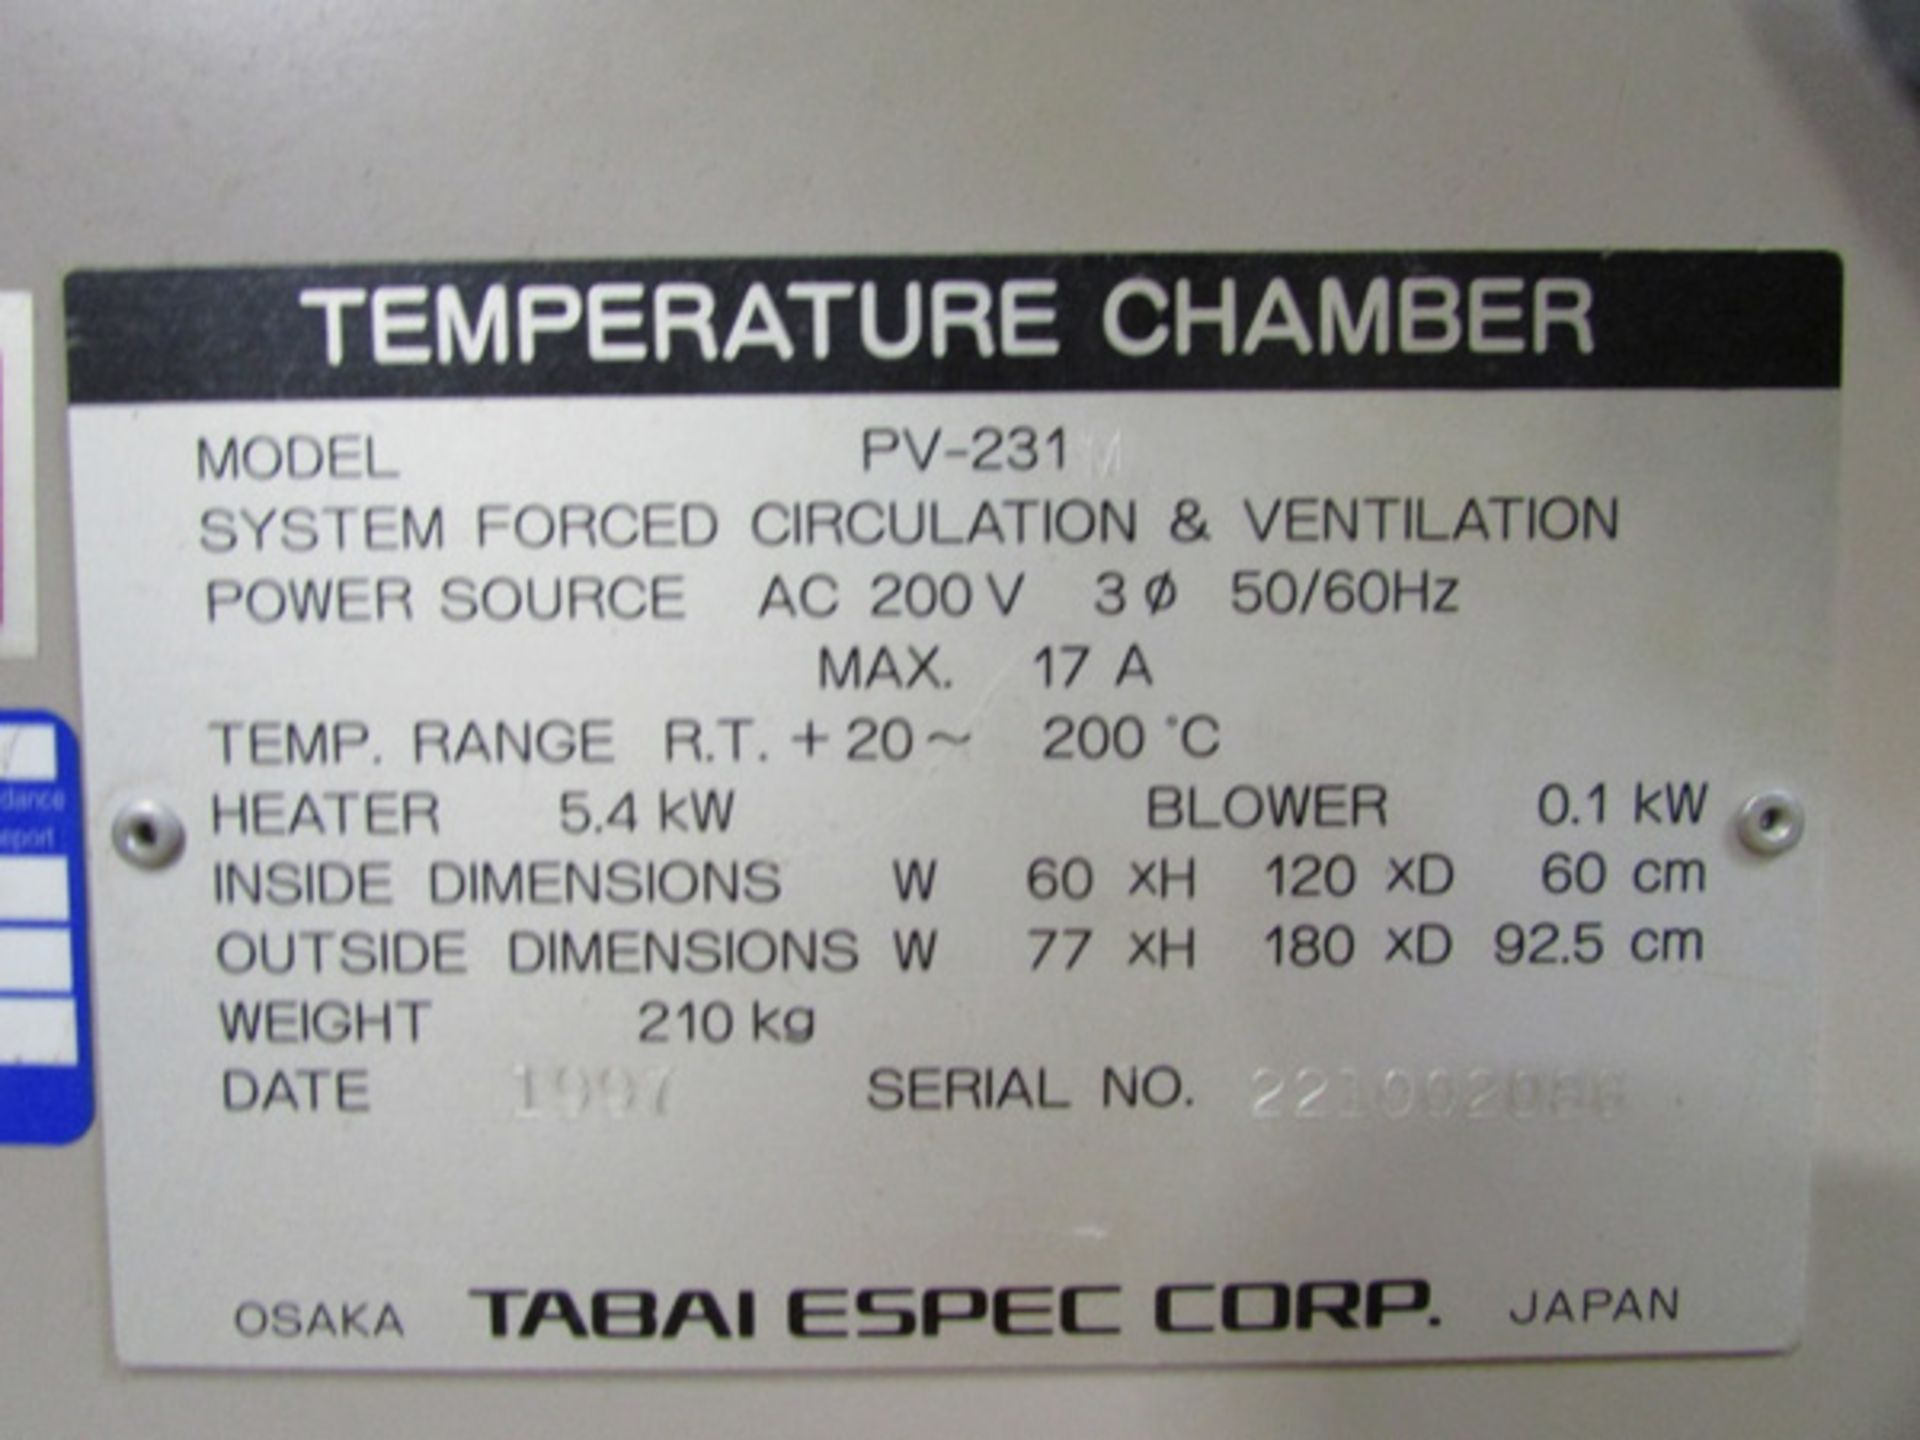 1997 Espec Environmental Testing Chamber, 60 CM x 120 CM x 60 CM, Mdl: PV-231M, S/N: 221002086, - Image 8 of 8